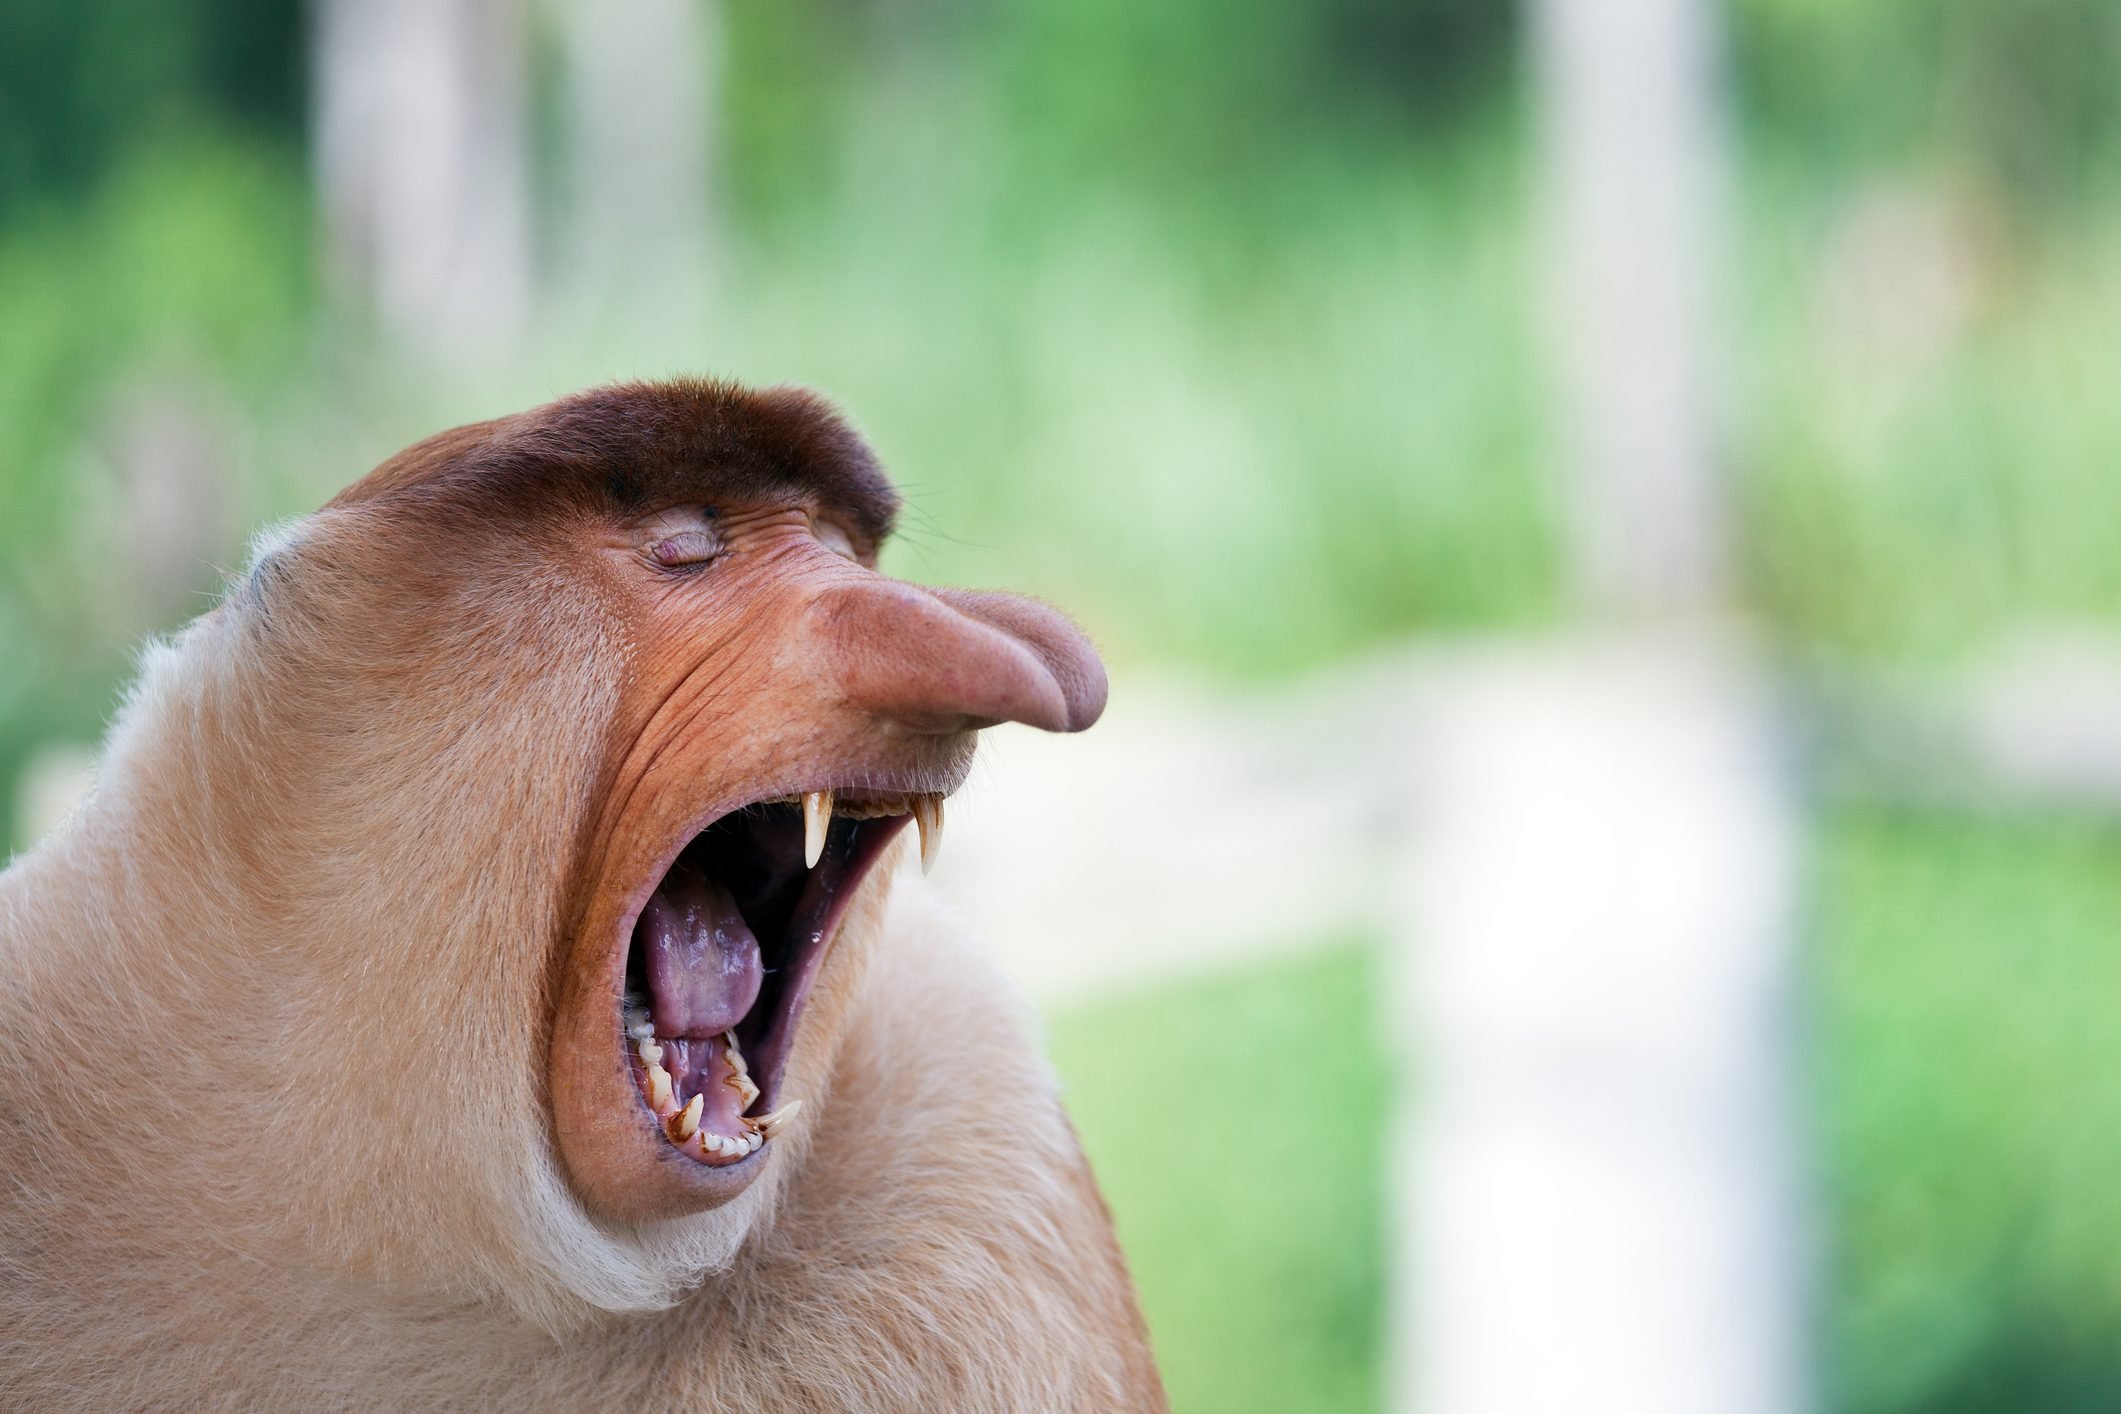 Long nose monkey yawning, Sabah, Borneo, Malaysia